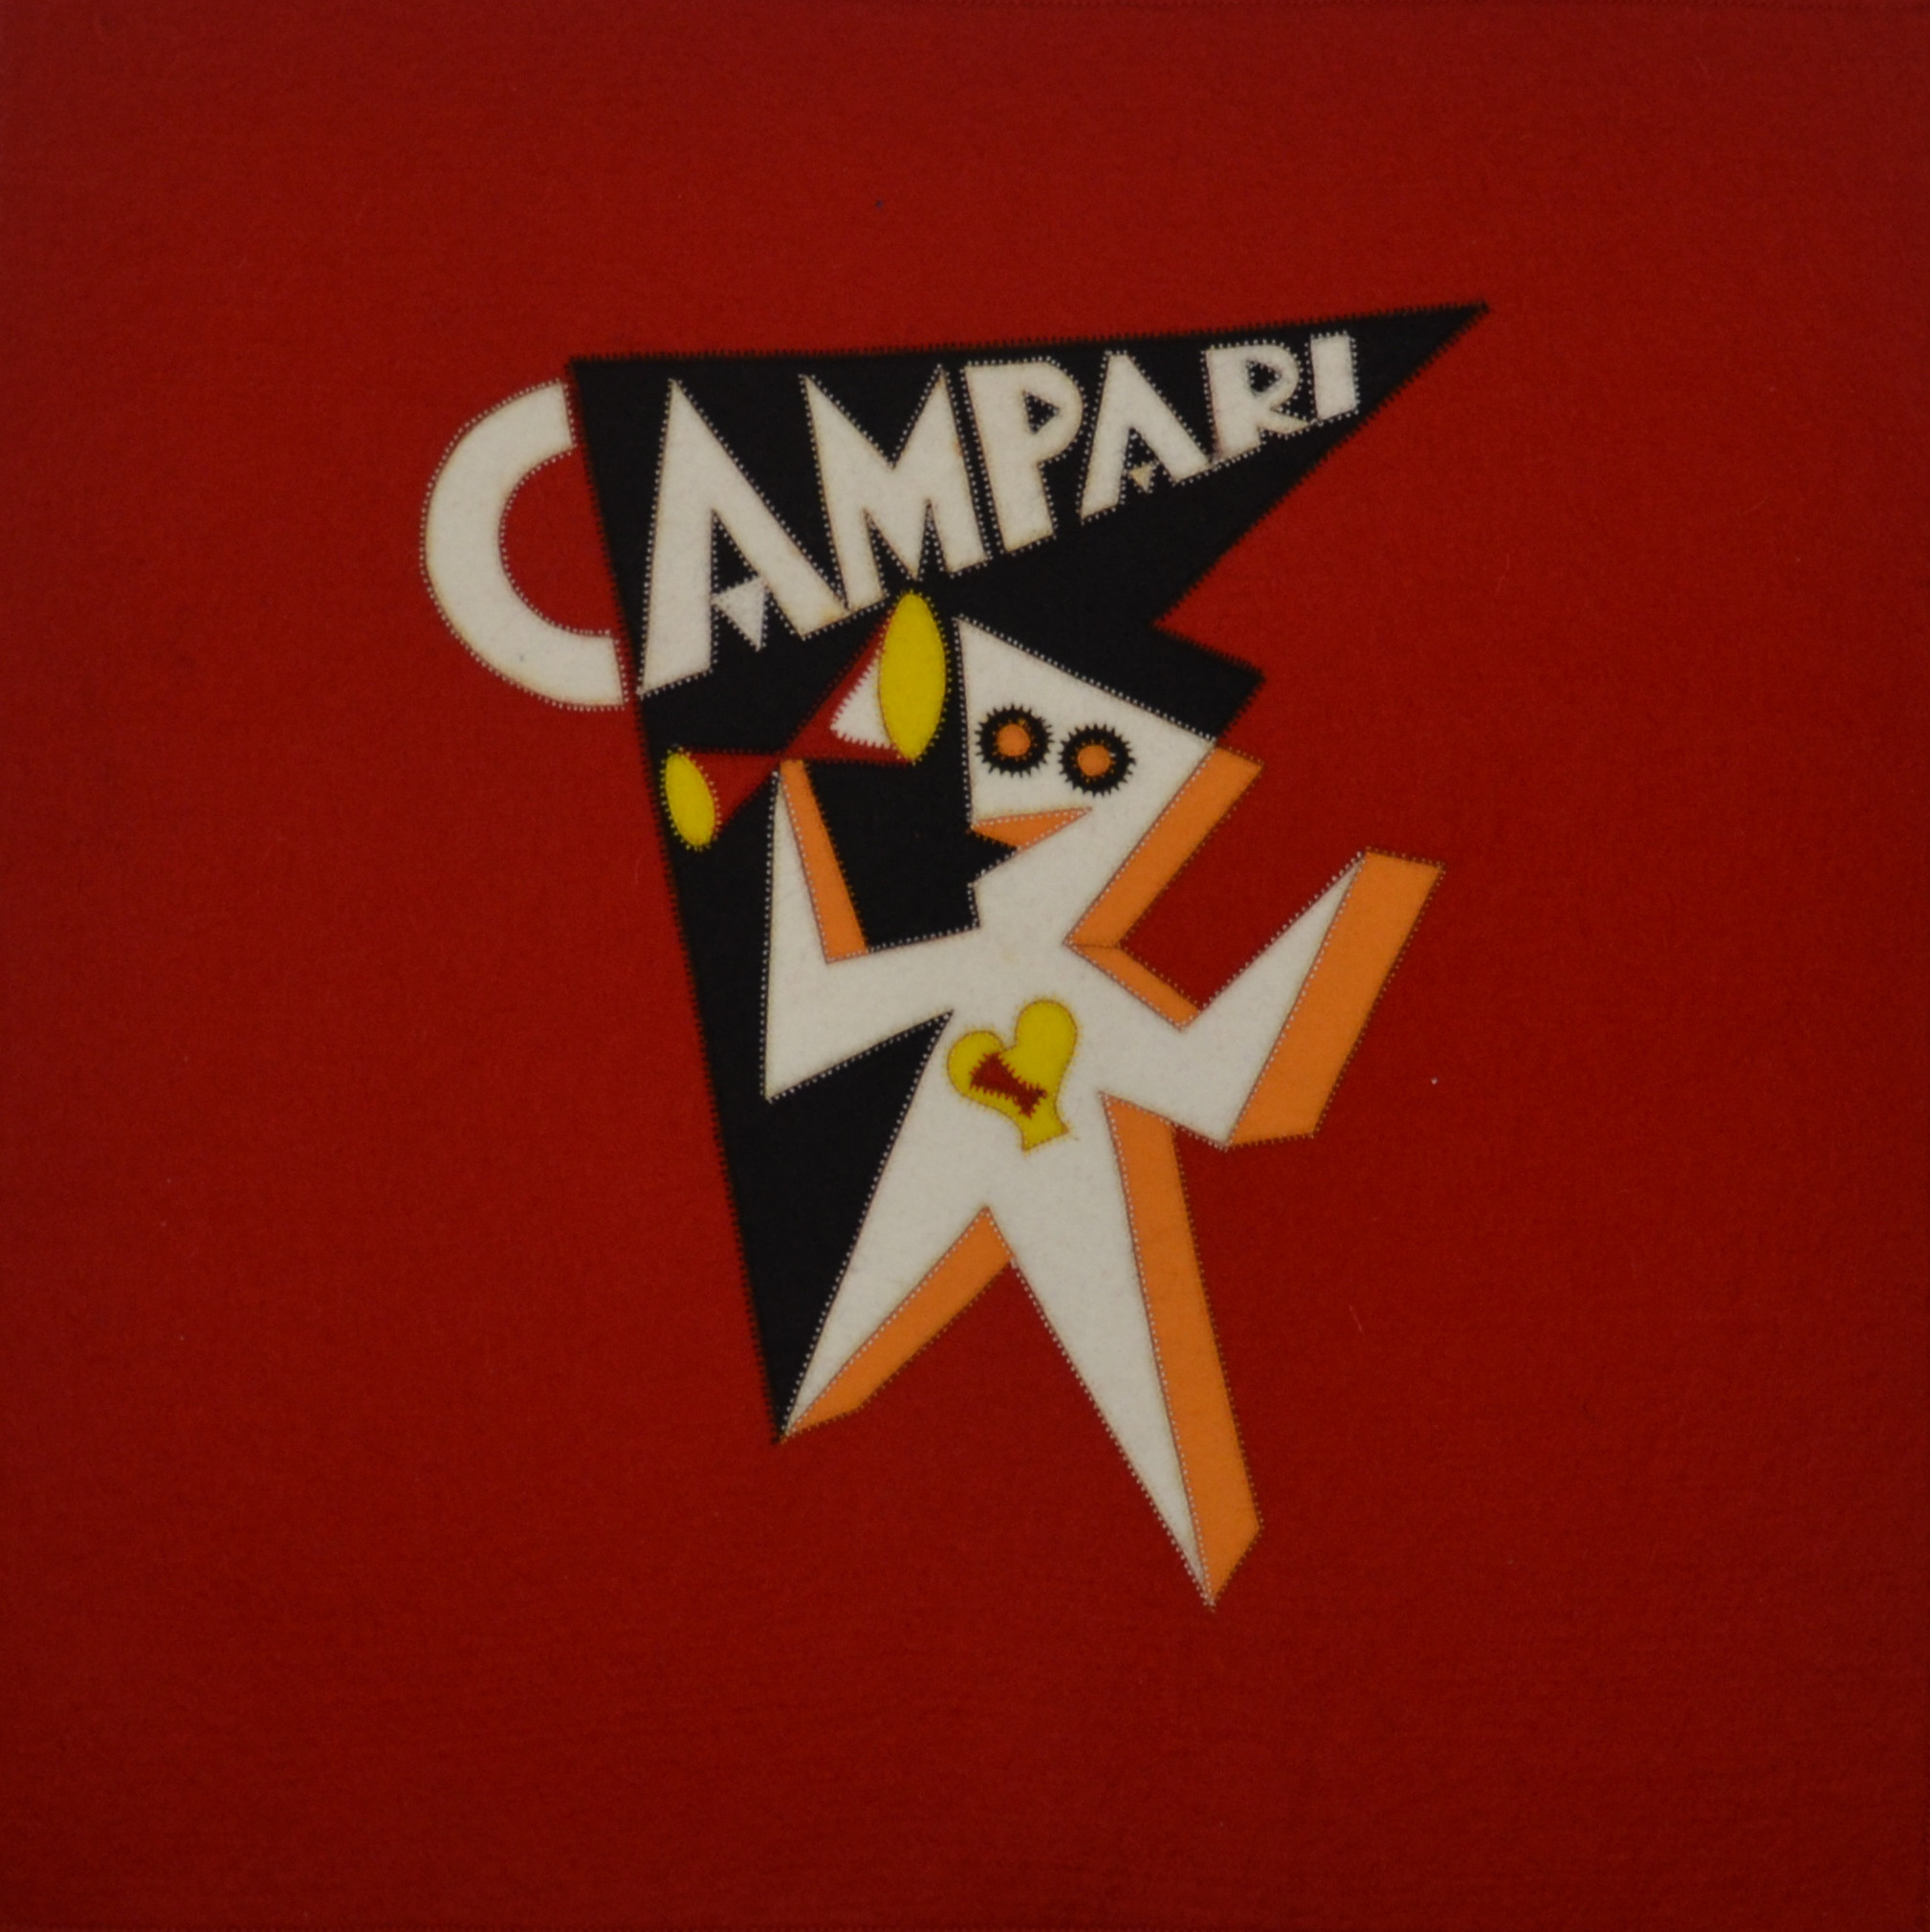 Omino Campari T20016